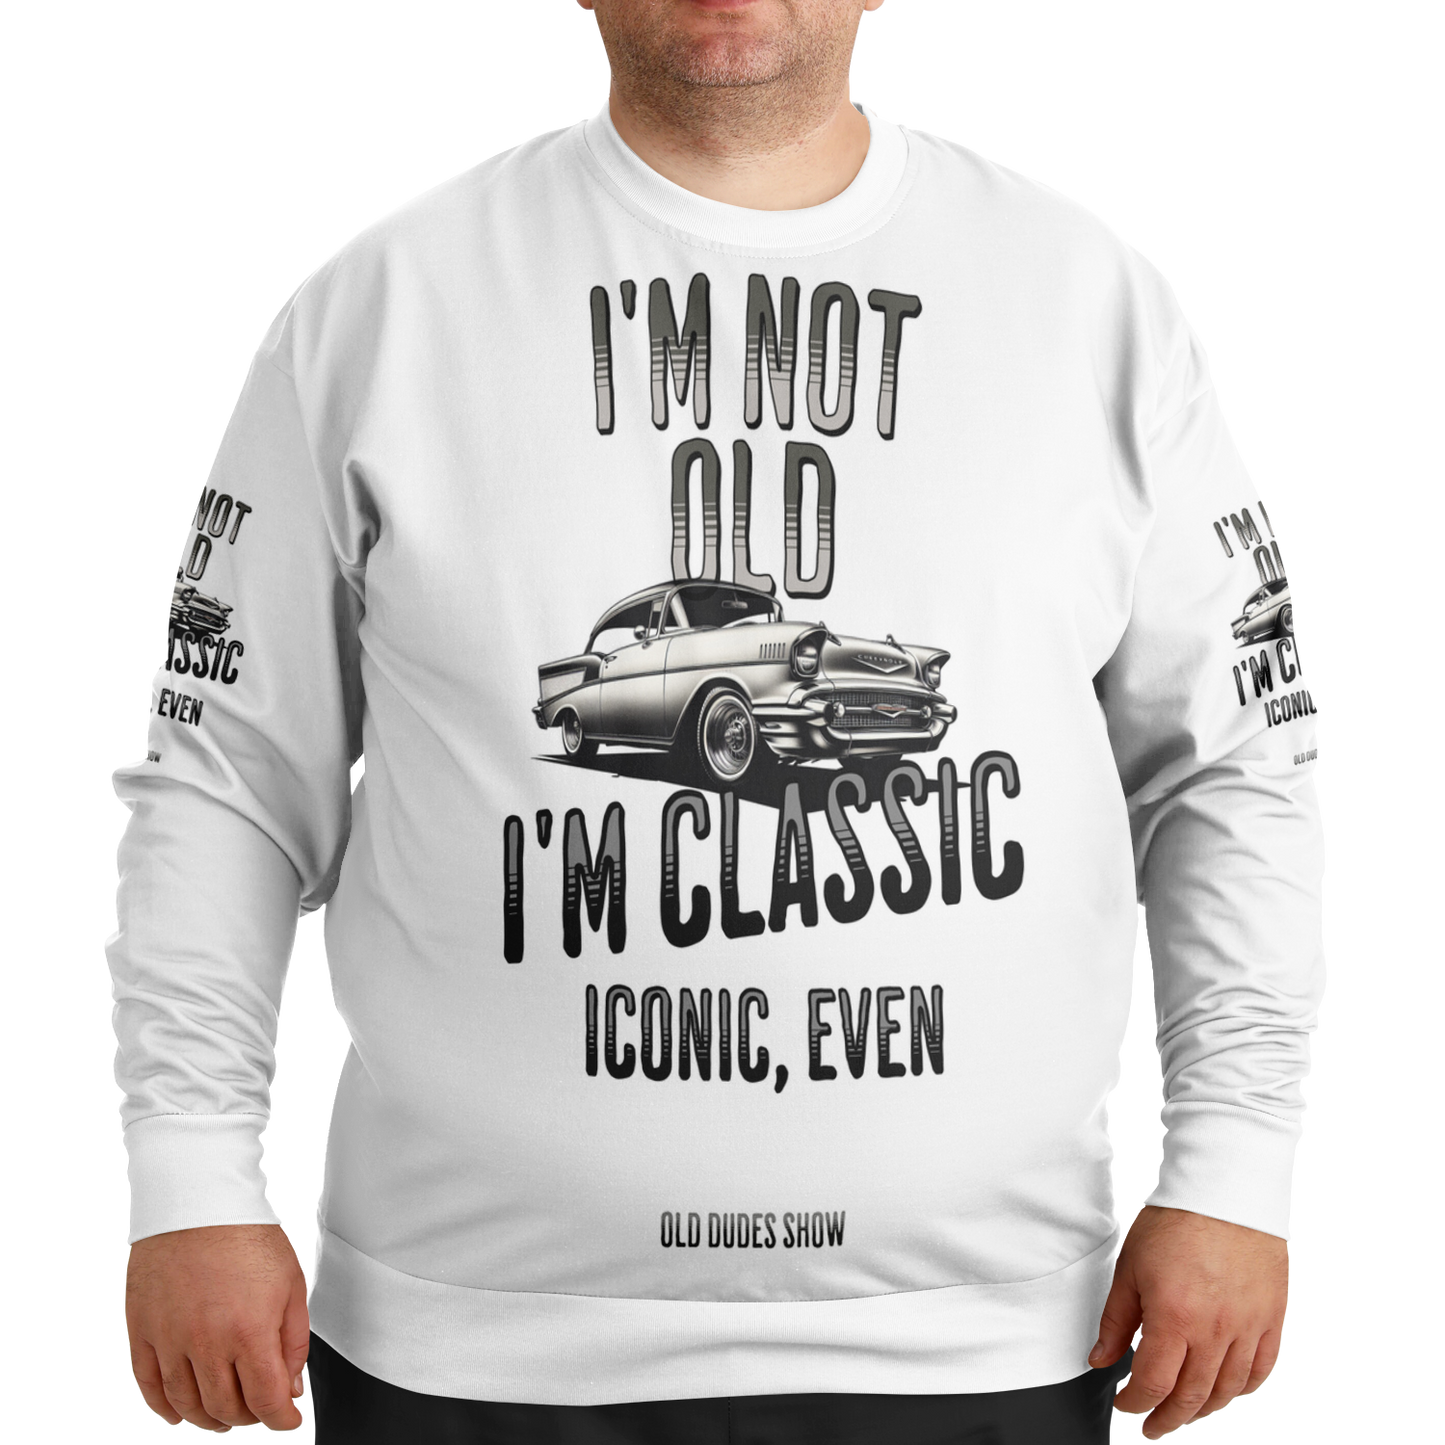 Athletic Plus-size Sweatshirt, I'm Not Old - Classic - Iconic 01